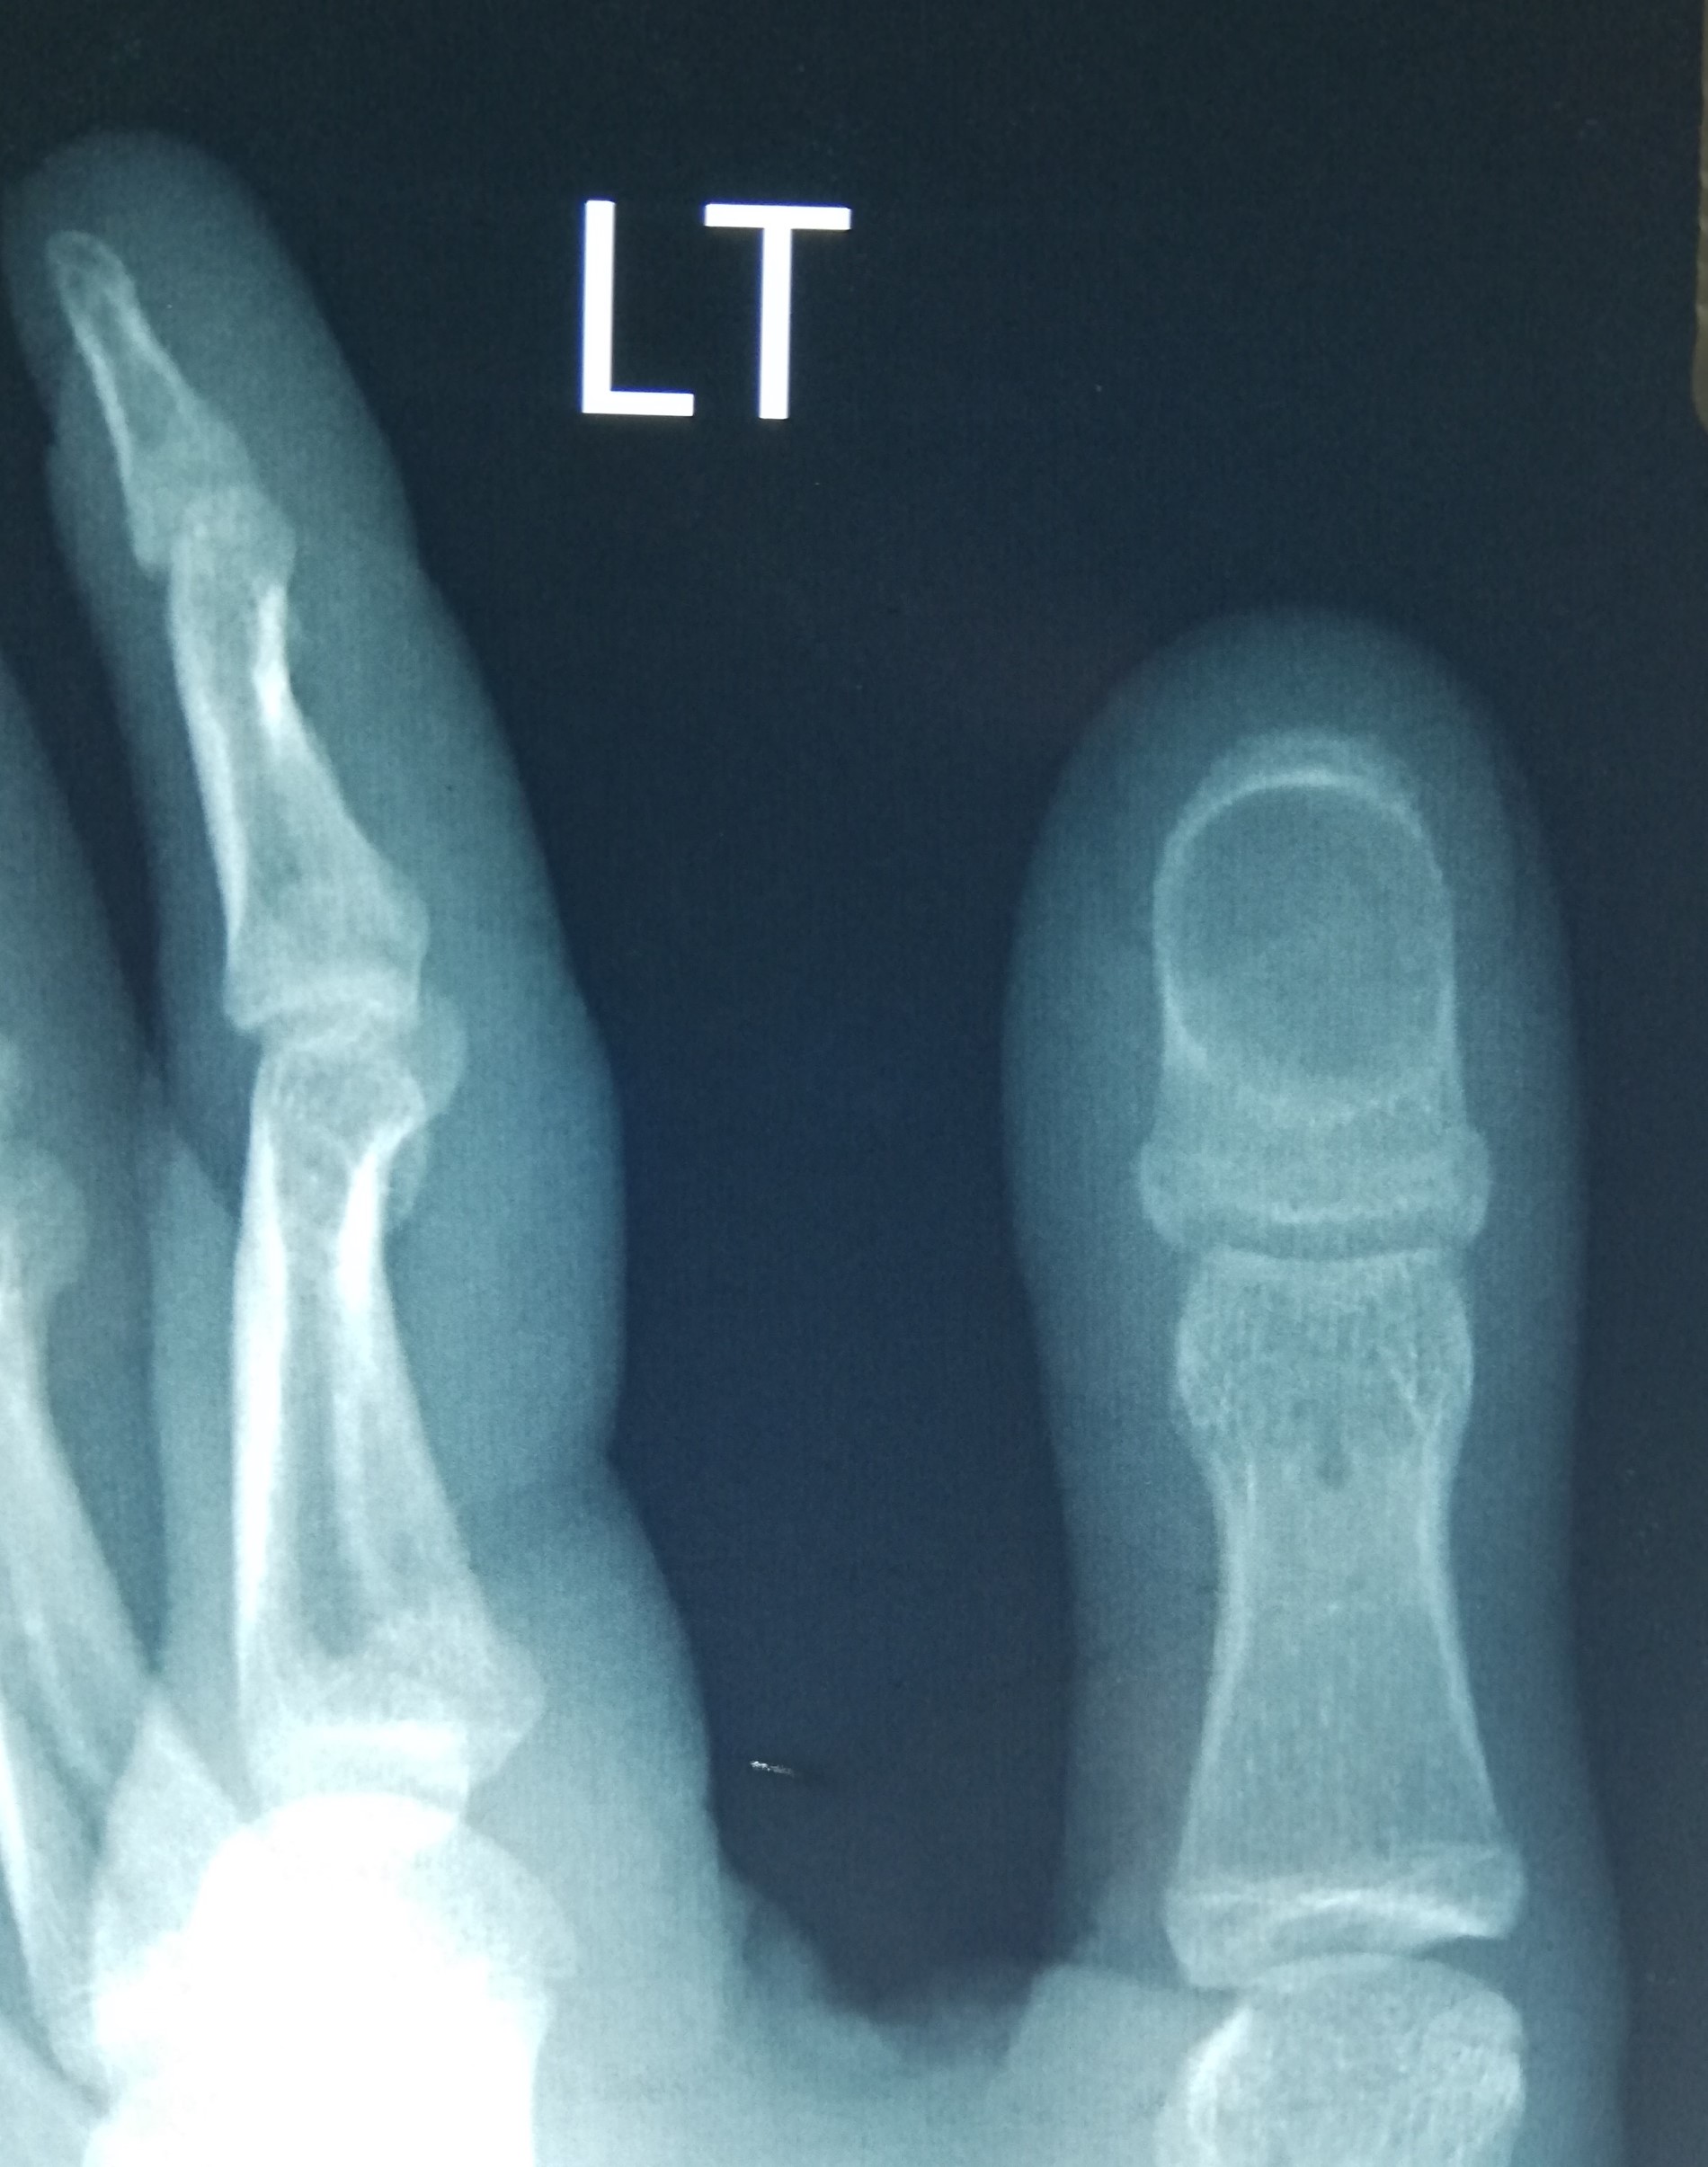 Distal phalanx of thumb